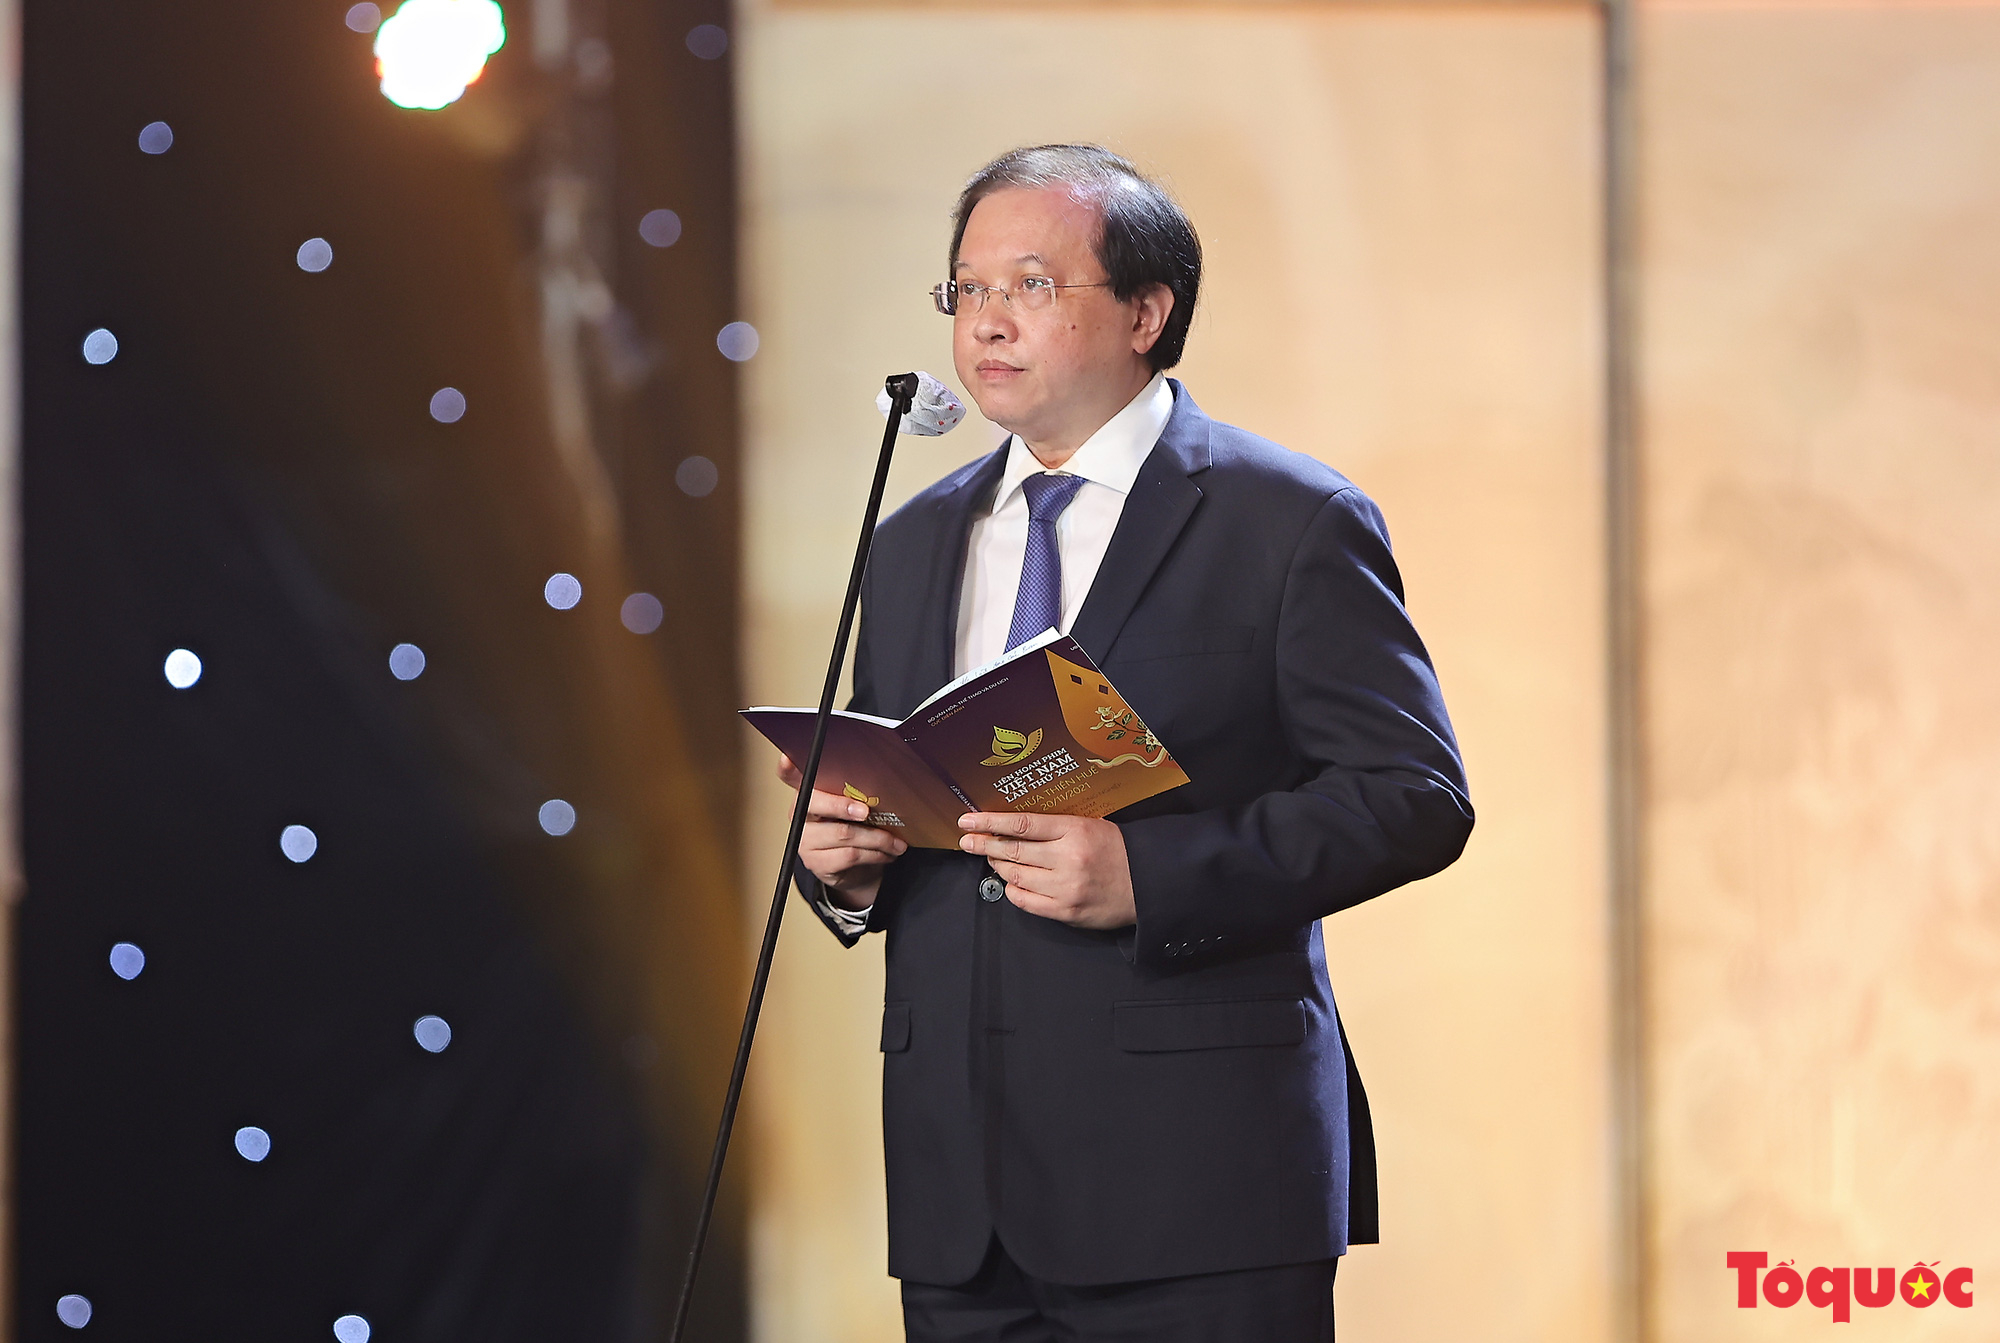 Toàn cảnh Lễ Bế mạc và trao giải Liên hoan phim Việt Nam lần thứ XXII  - Ảnh 3.